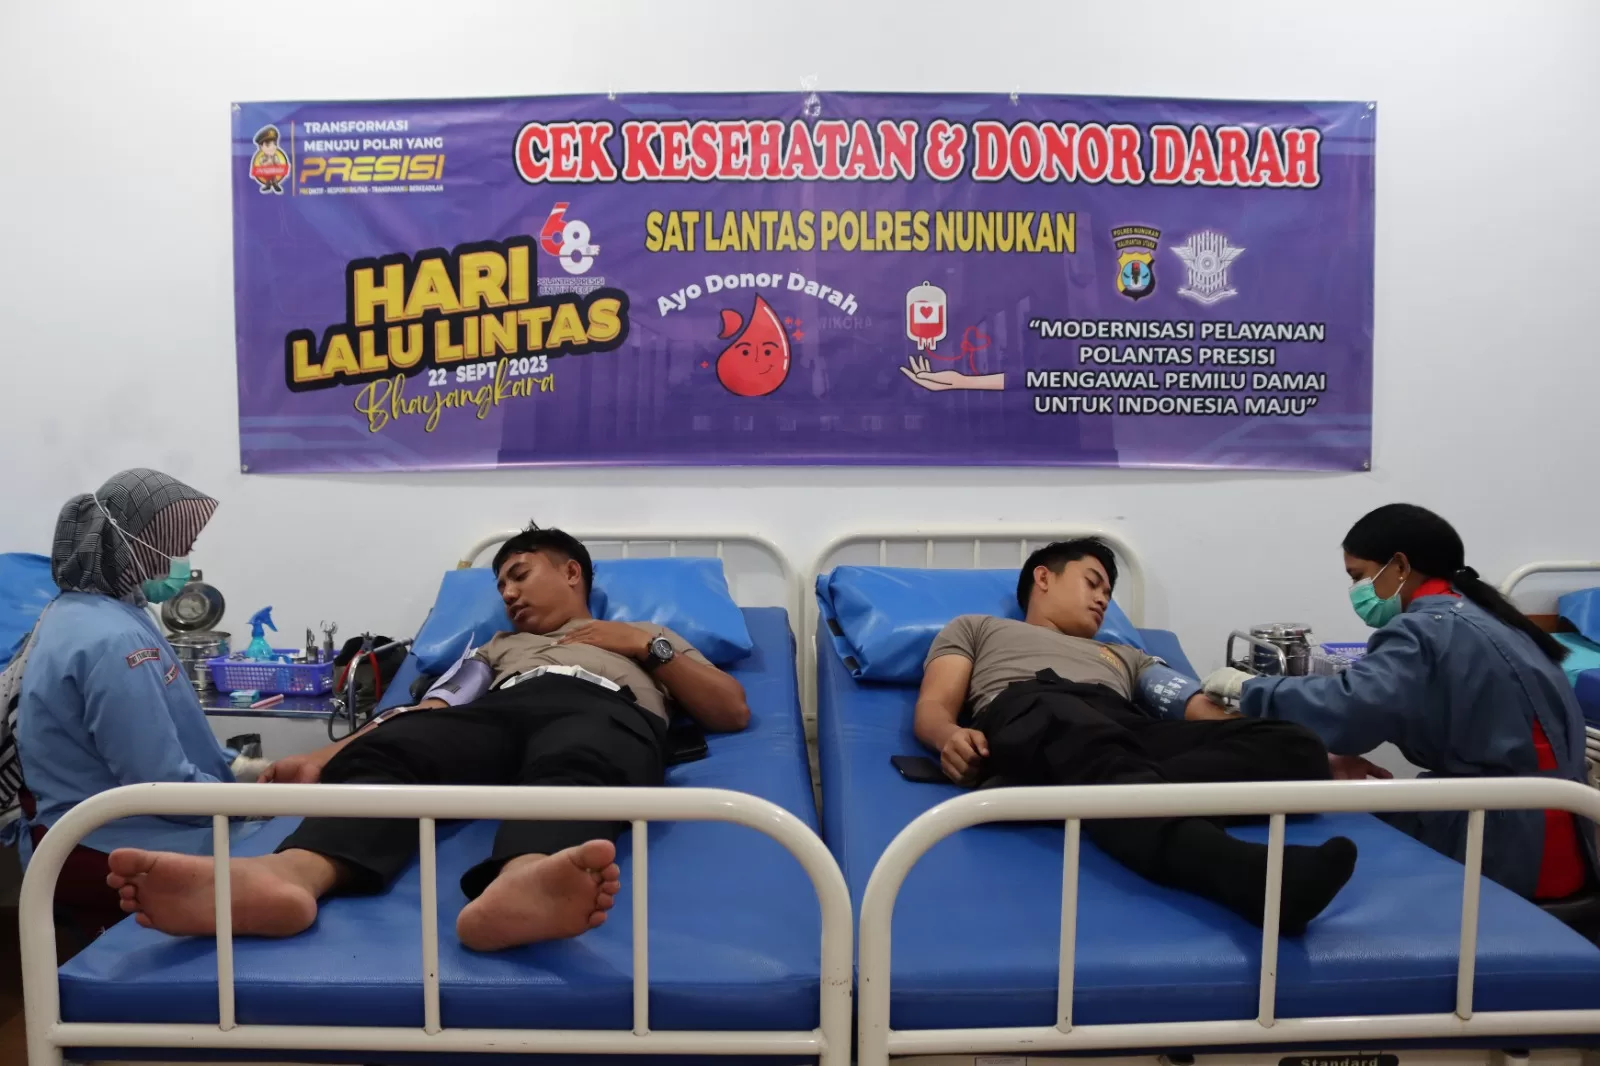 Peringati HUT Lantas ke-68, Polres Nunukan Gelar Donor Darah